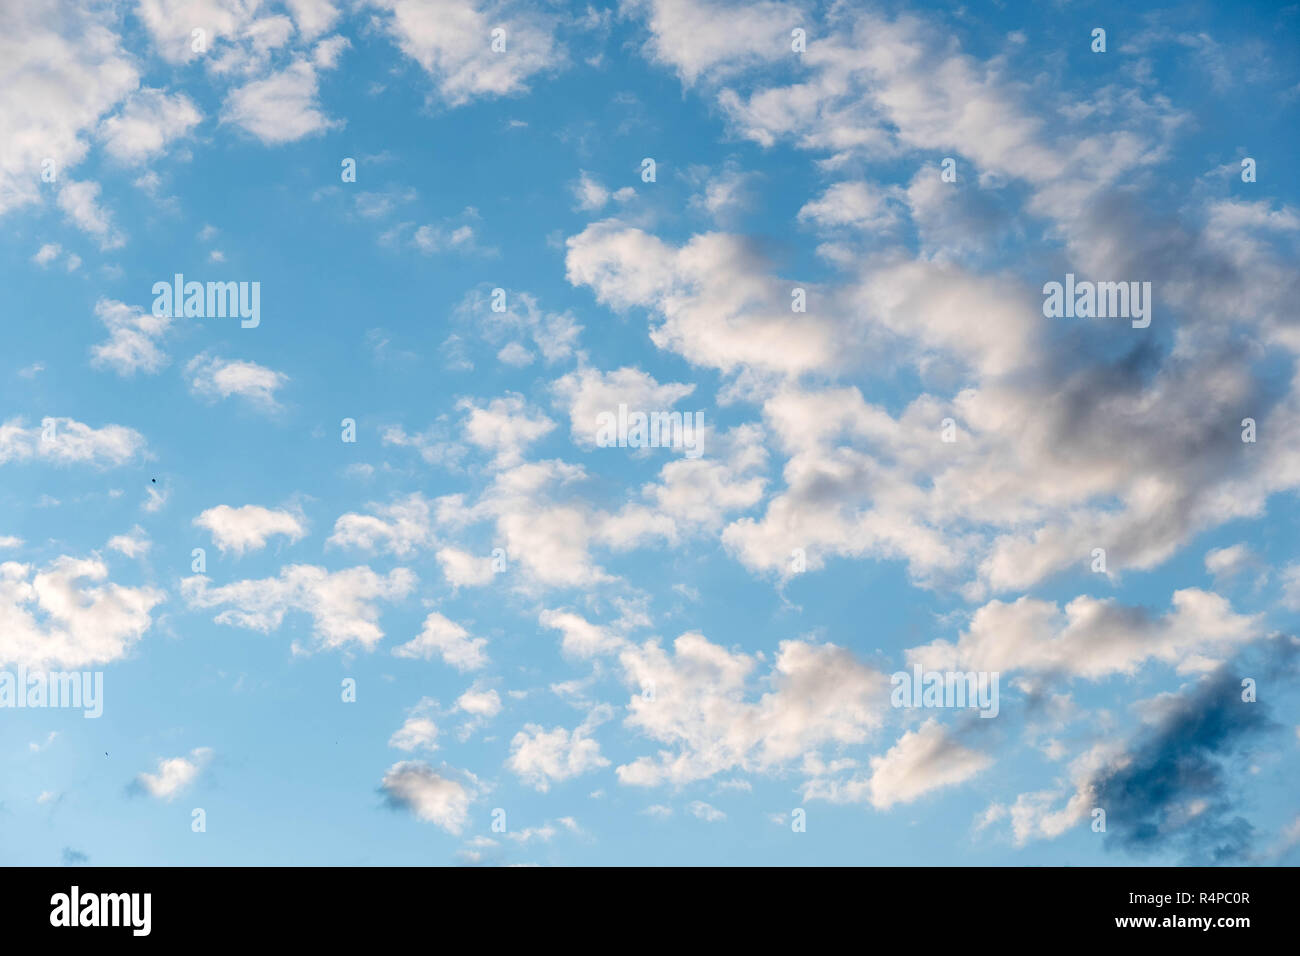 Schone Weisse Wolken Mit Blauem Himmel Farbton Farbverlauf Von Weiss Zu Blau Fur Hintergrundbild Stockfotografie Alamy